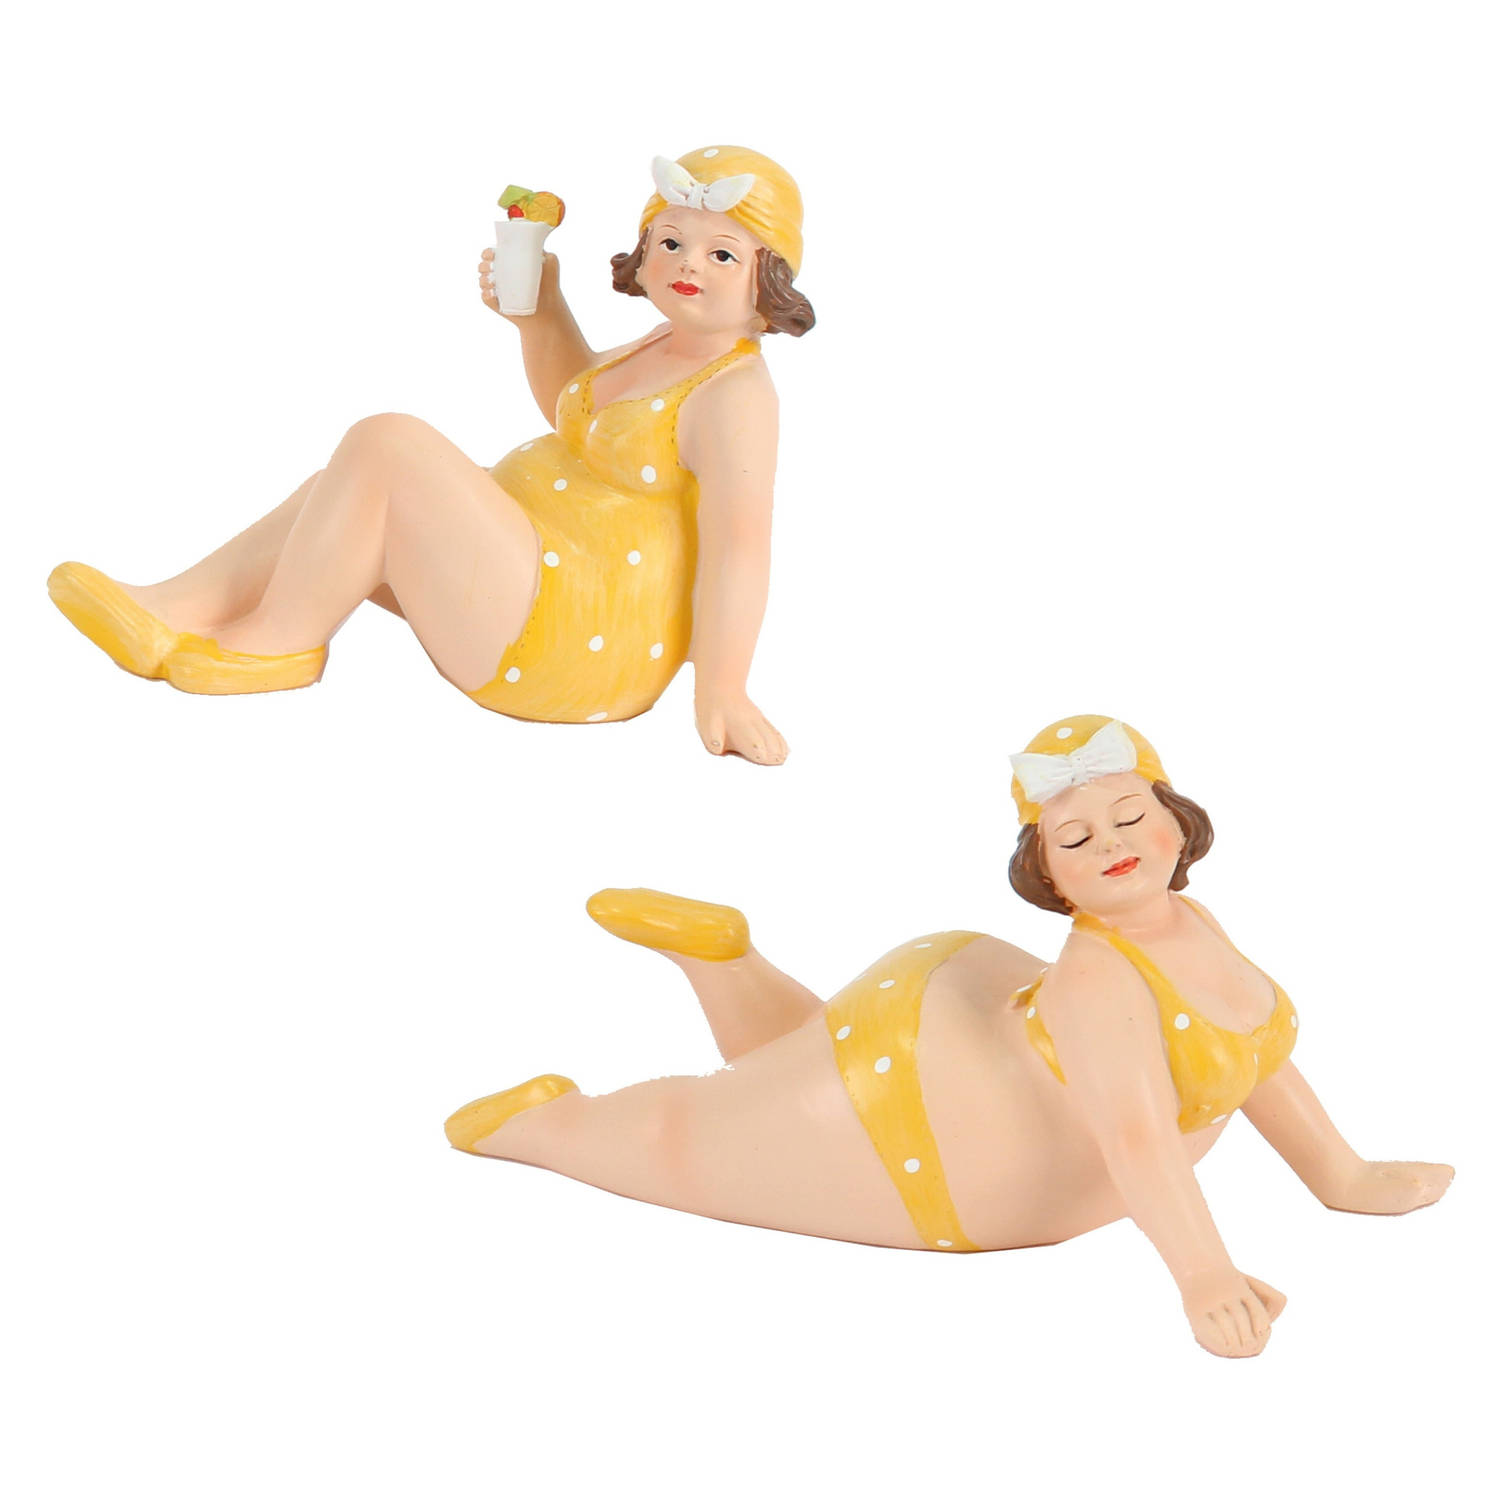 Woonkamer decoratie beeldjes set van 2 dikke dames geel badpak 17 cm Beeldjes